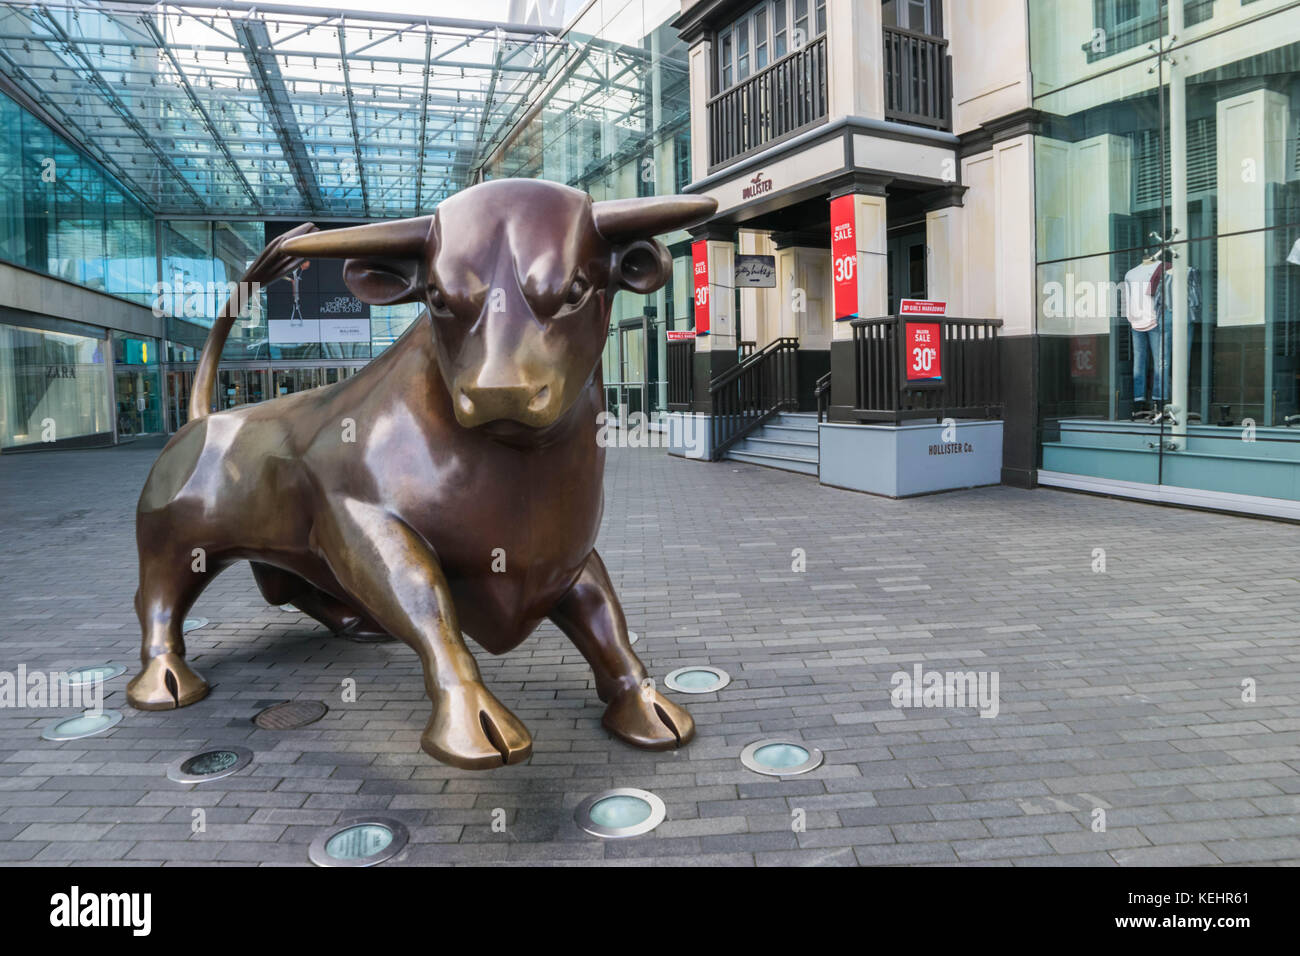 Birminghamm, uk - Octobre 3rd, 2017 : une sculpture de bull à l'extérieur de l'avant du centre commercial Bullring, un monument à Birmingham. Banque D'Images